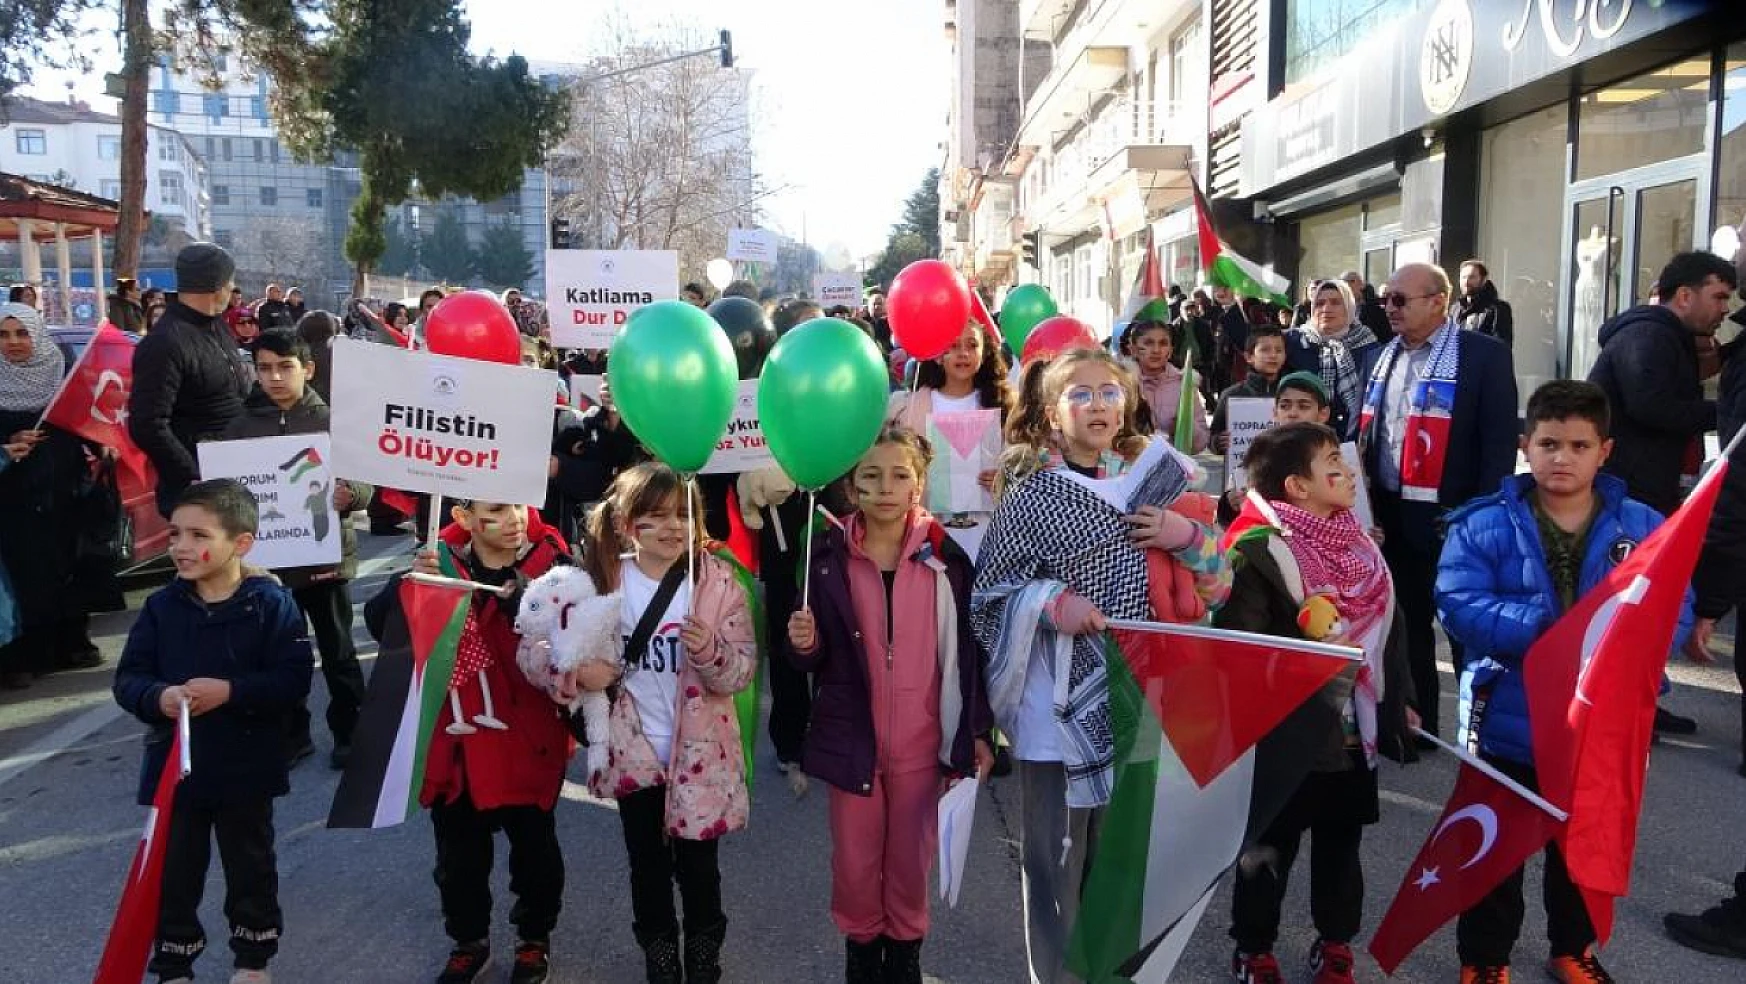 Filistin için yürüdüler! Ispartalı çocuklardan destek!